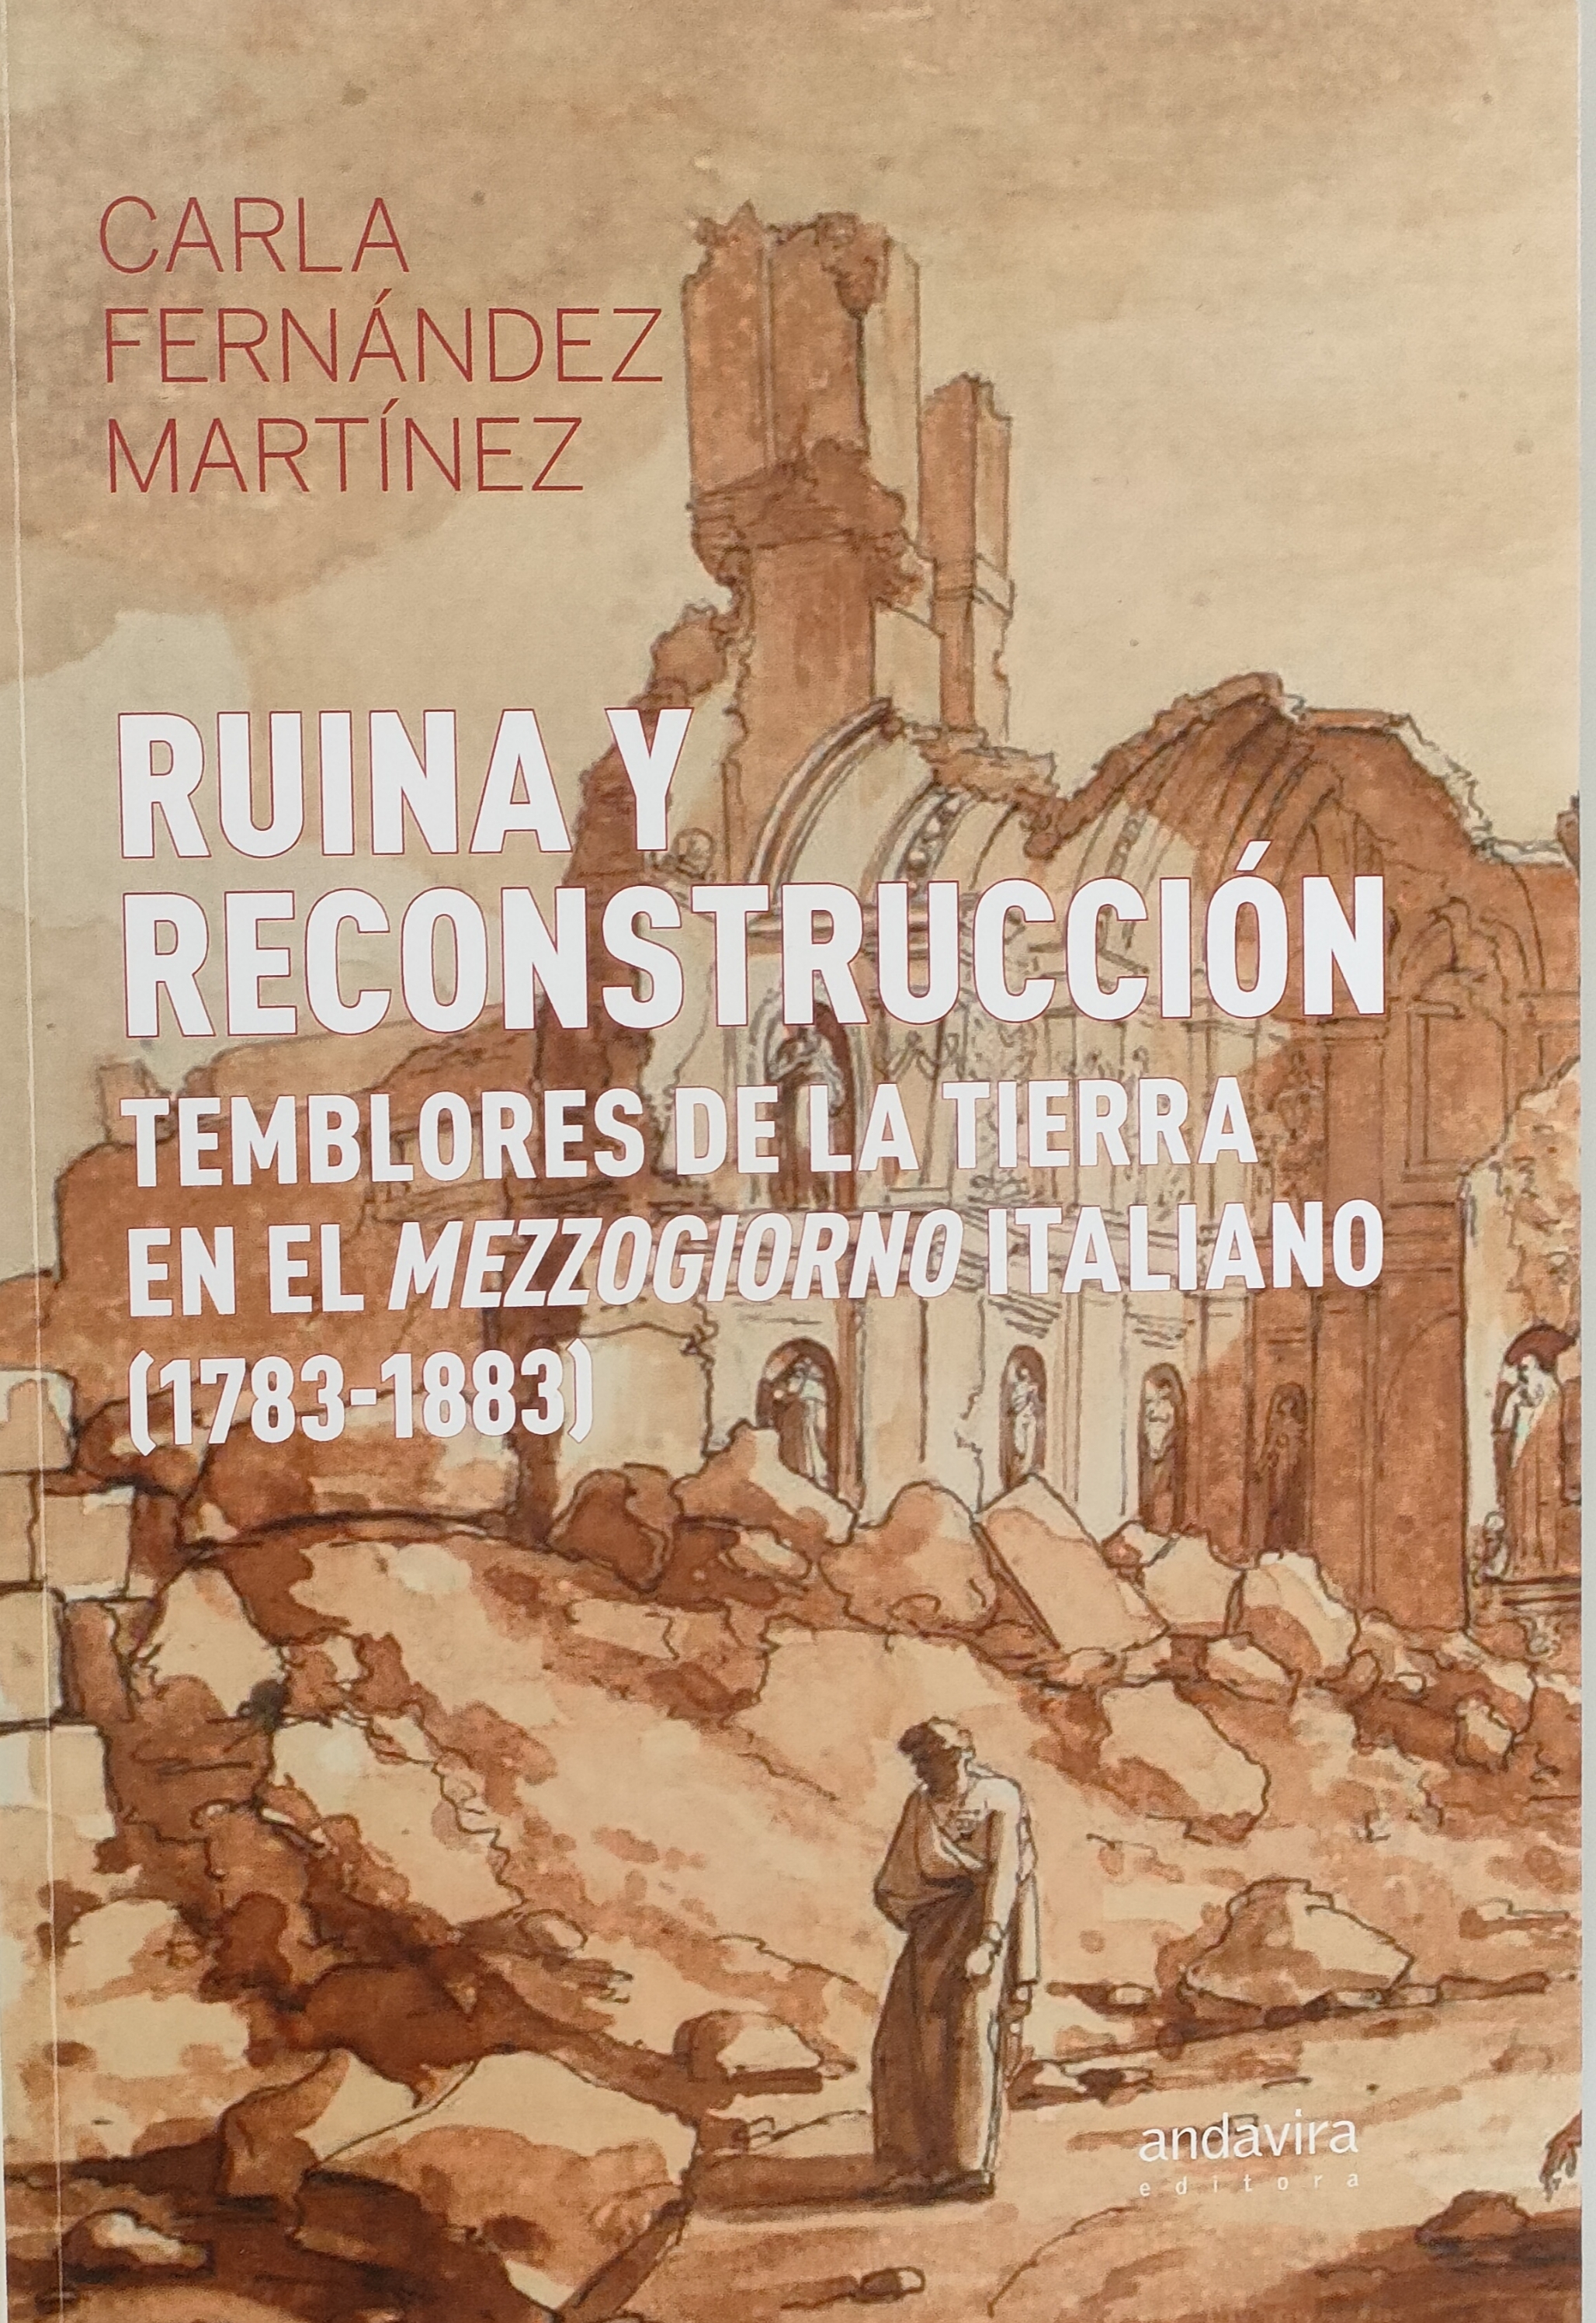 Imagen de portada del libro Ruina y reconstrucción